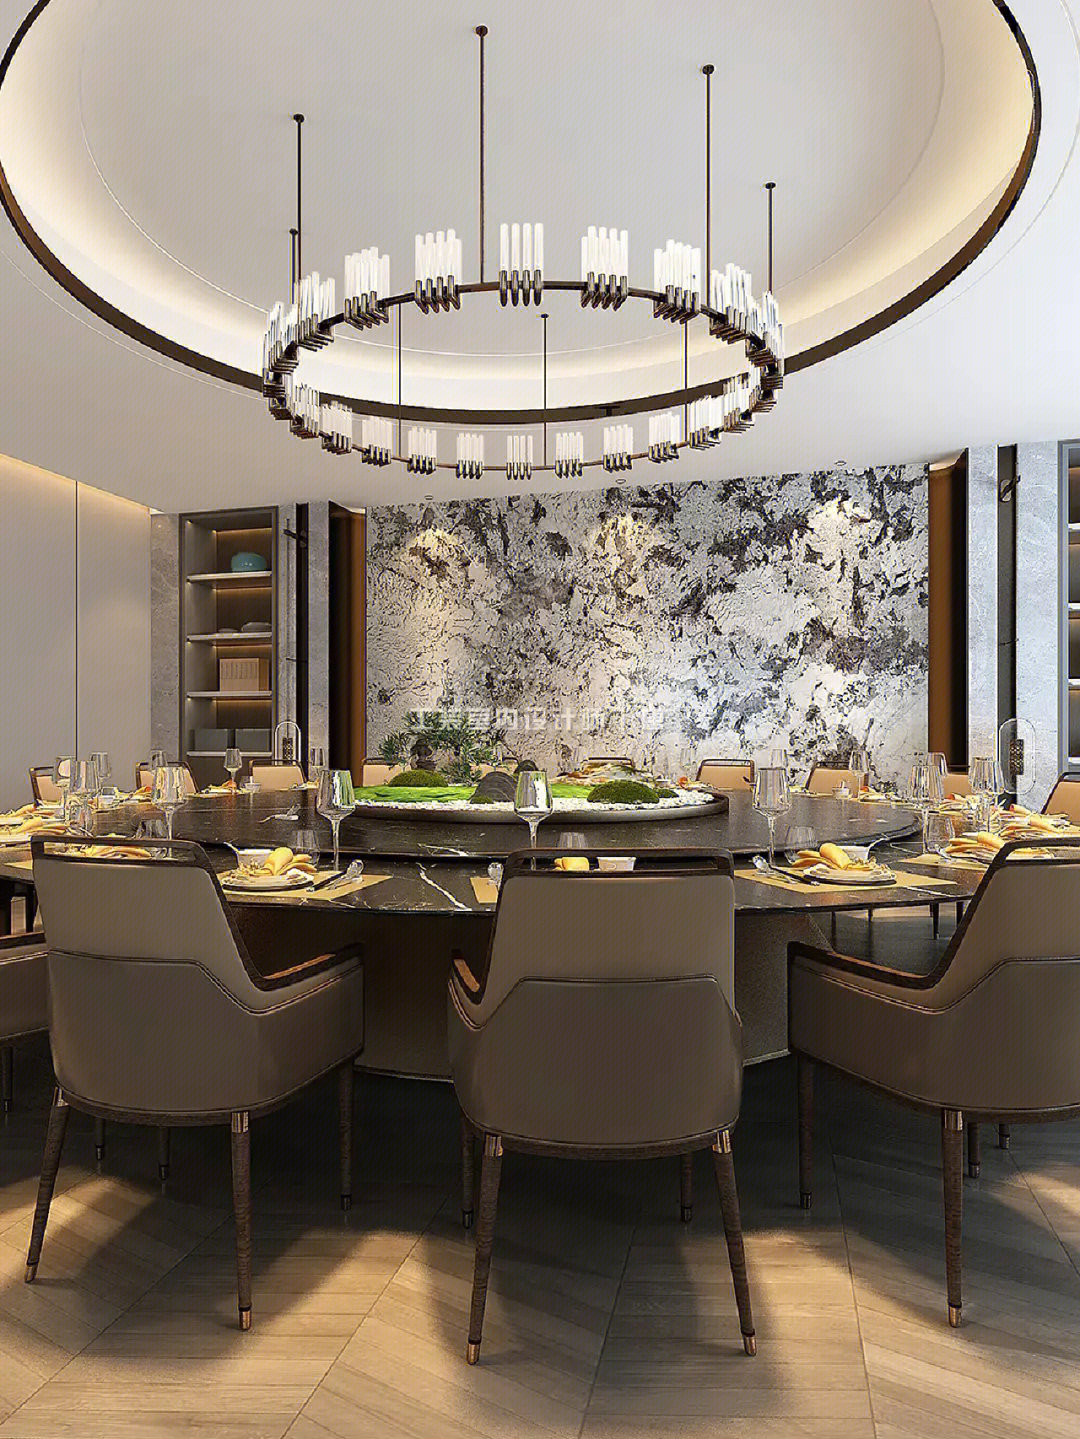 分享36套现代高级餐饮空间包房设计案例